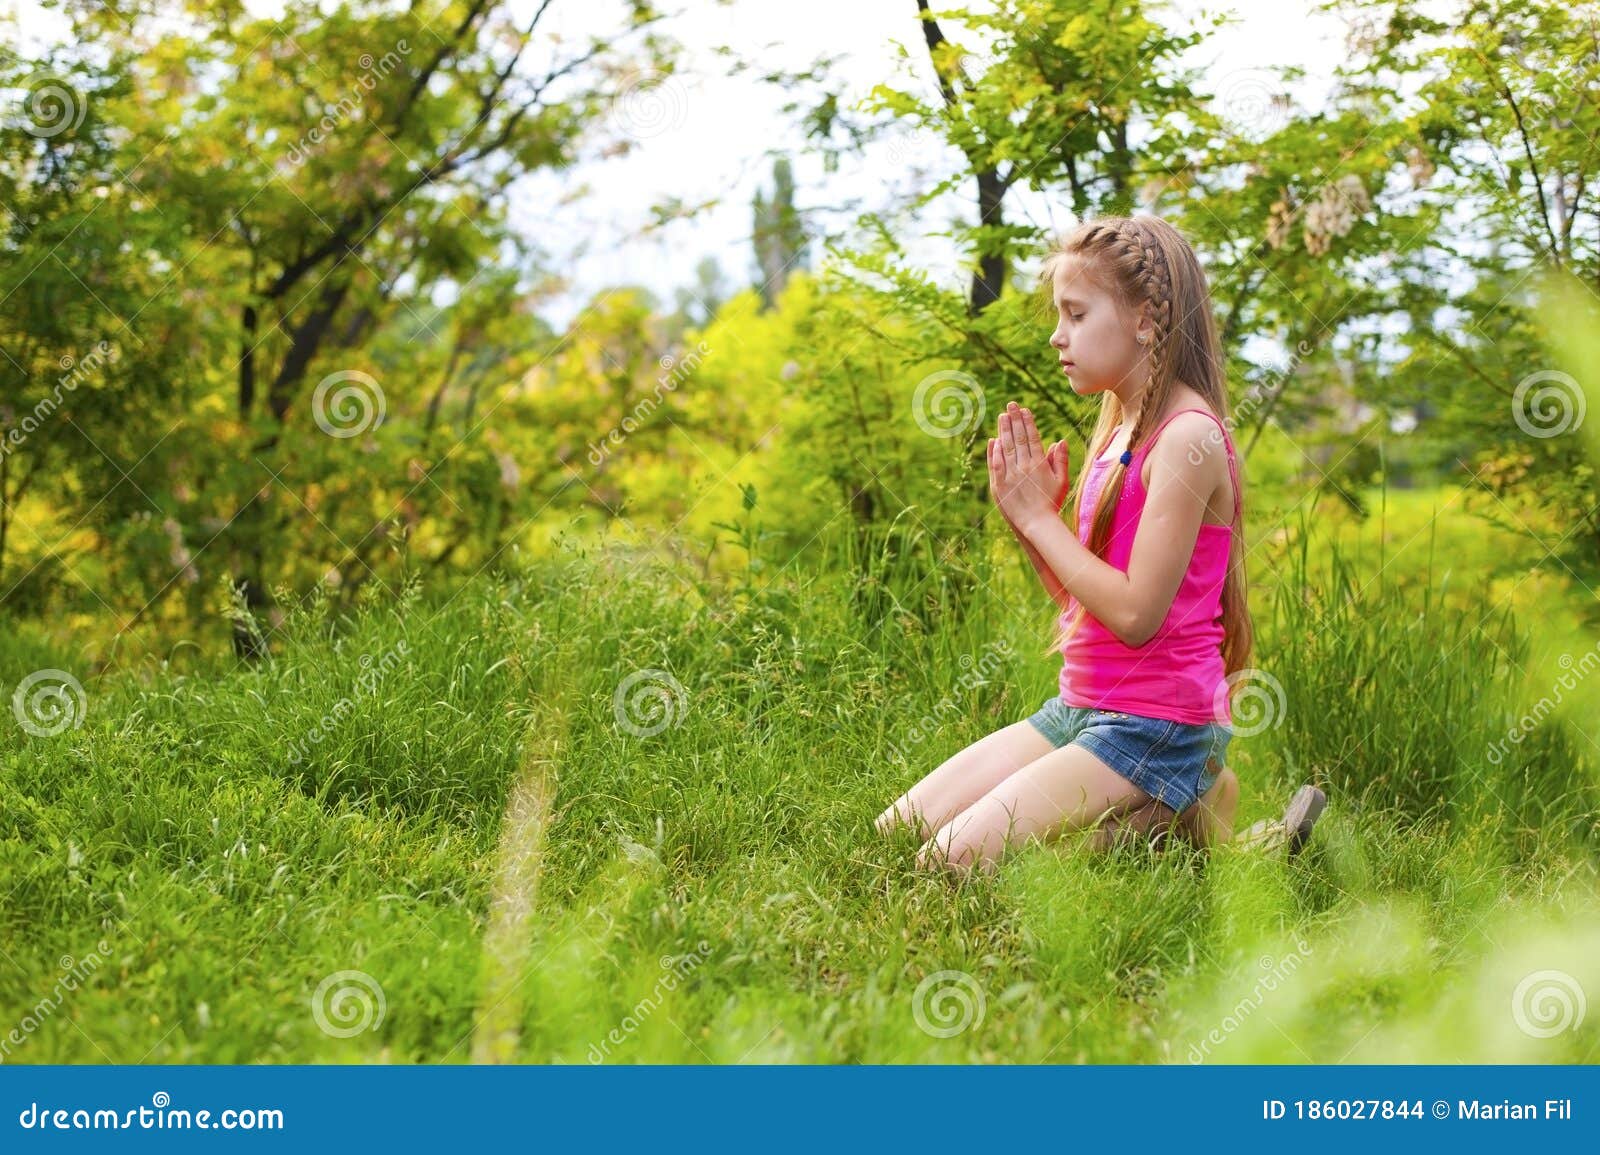 She is natural. Девушка на коленях природа. Зеленые колени. Девушка молится на природе фото.